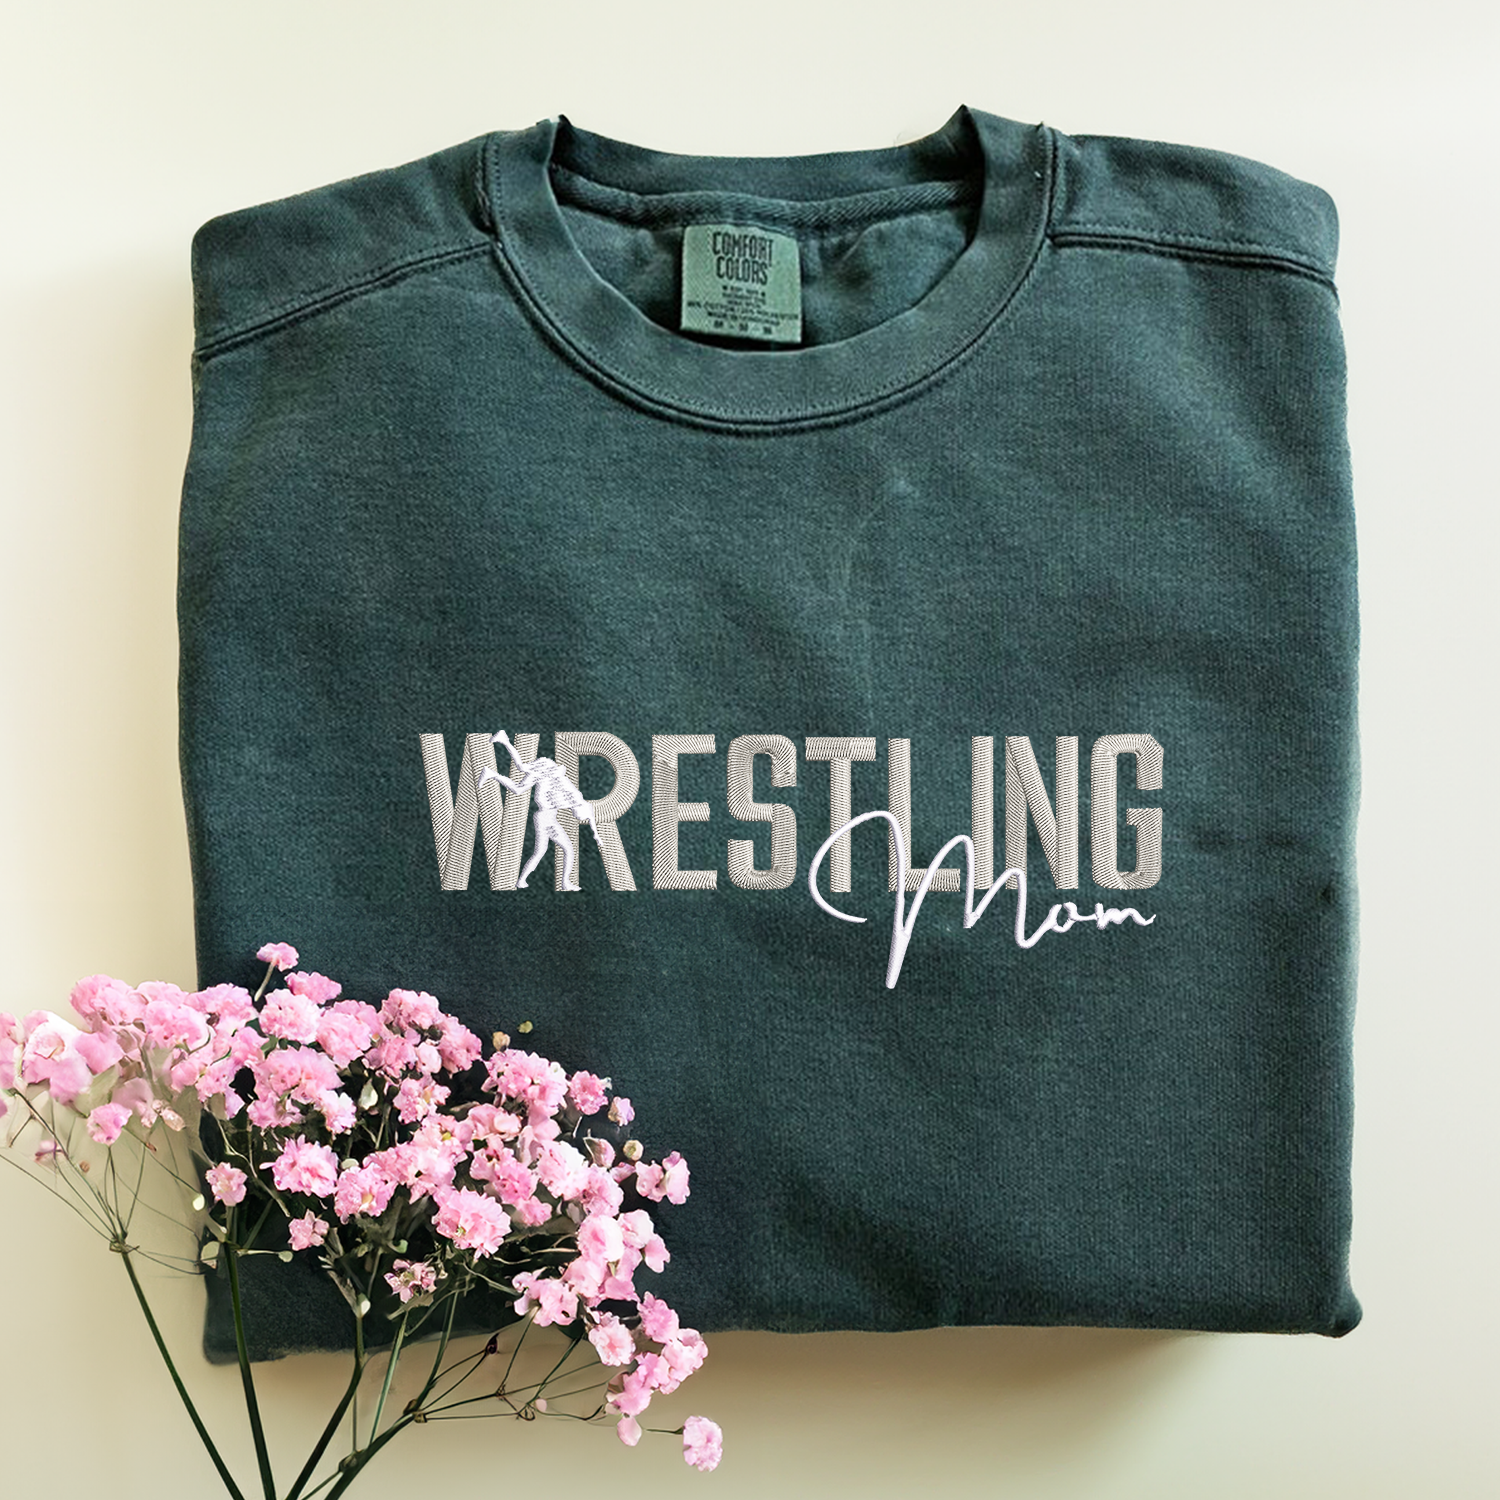 Wrestling Mom Shirt